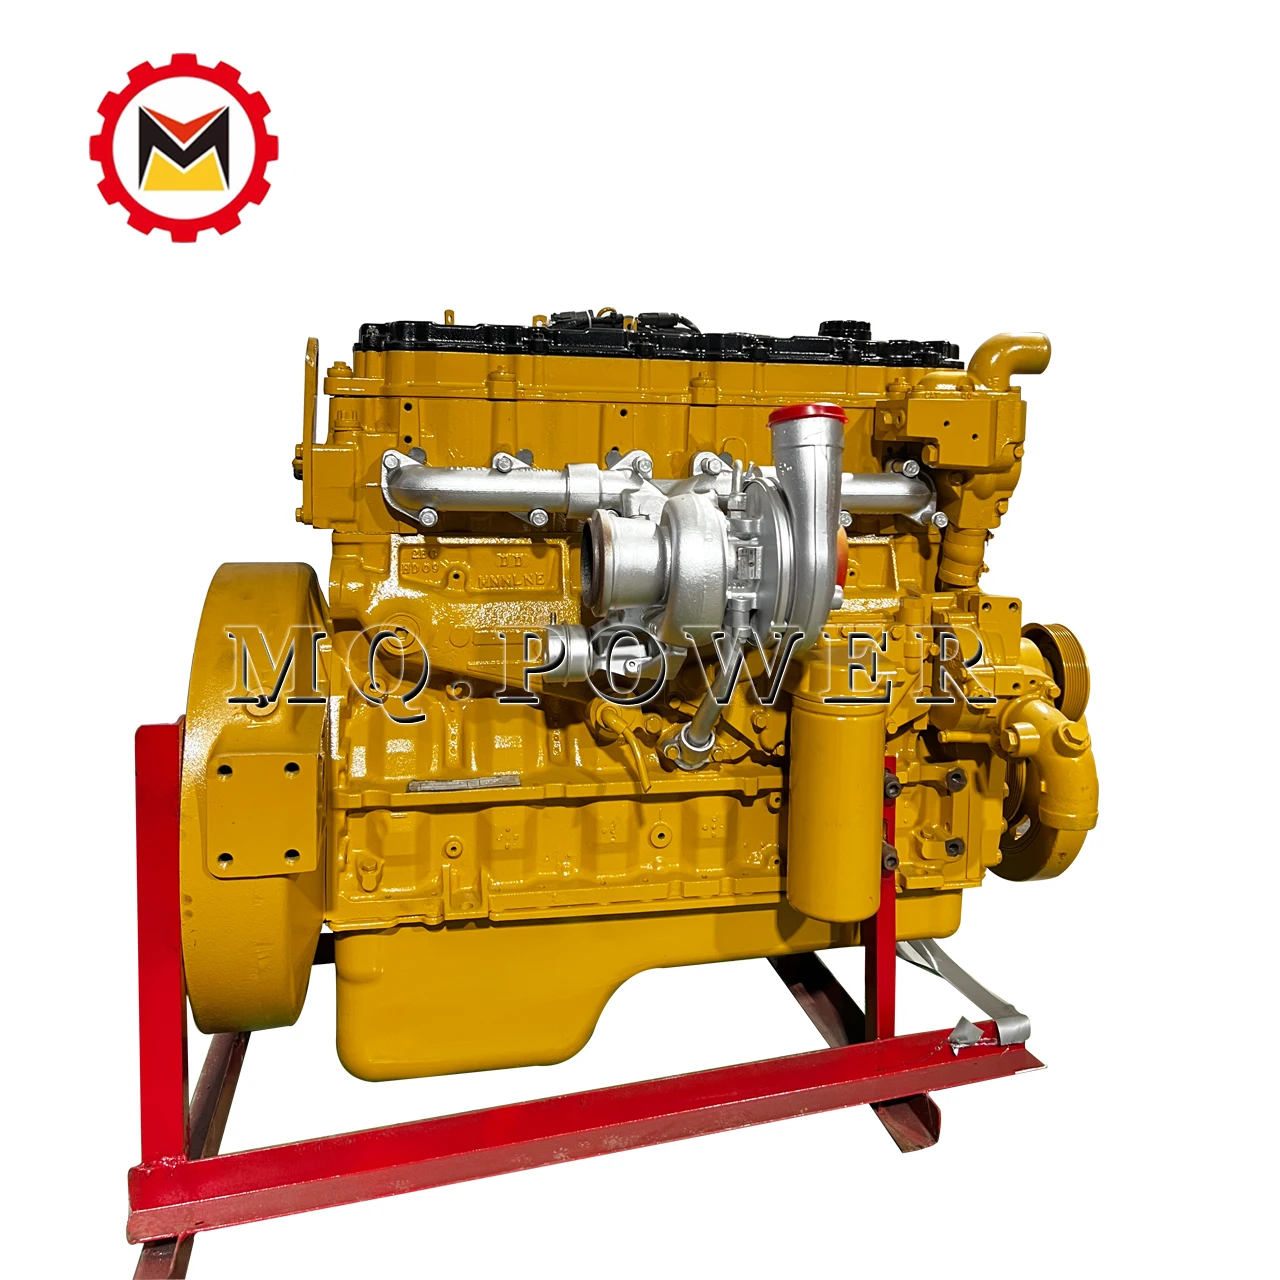 C7 Diesel Engines High-Performance Remanufactured Diesel Engine High Power